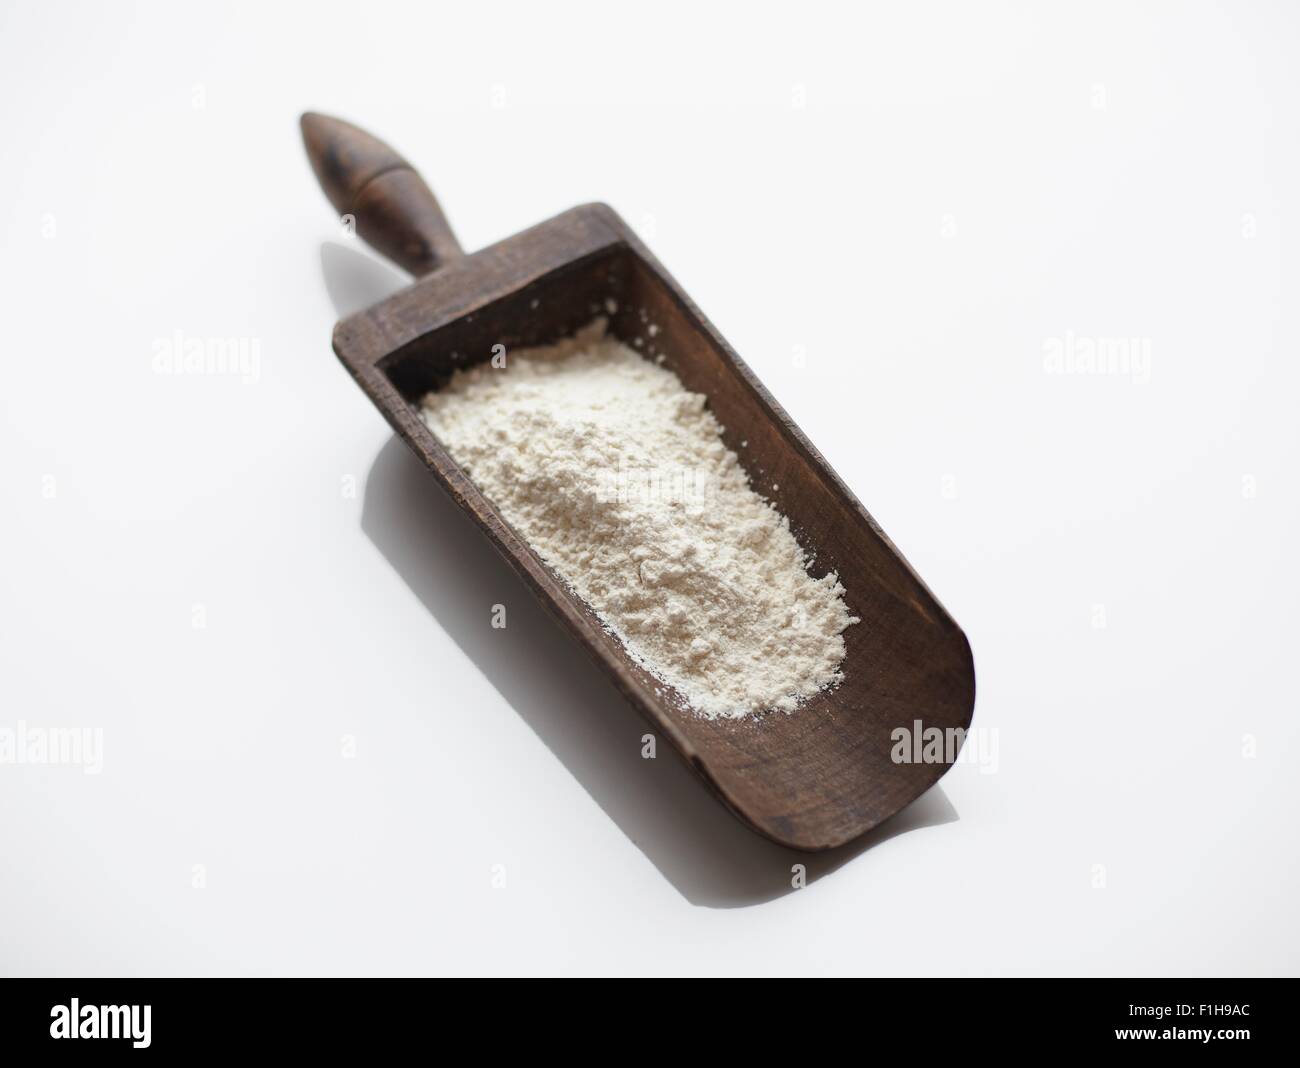 Flour in wooden scoop Stock Photo